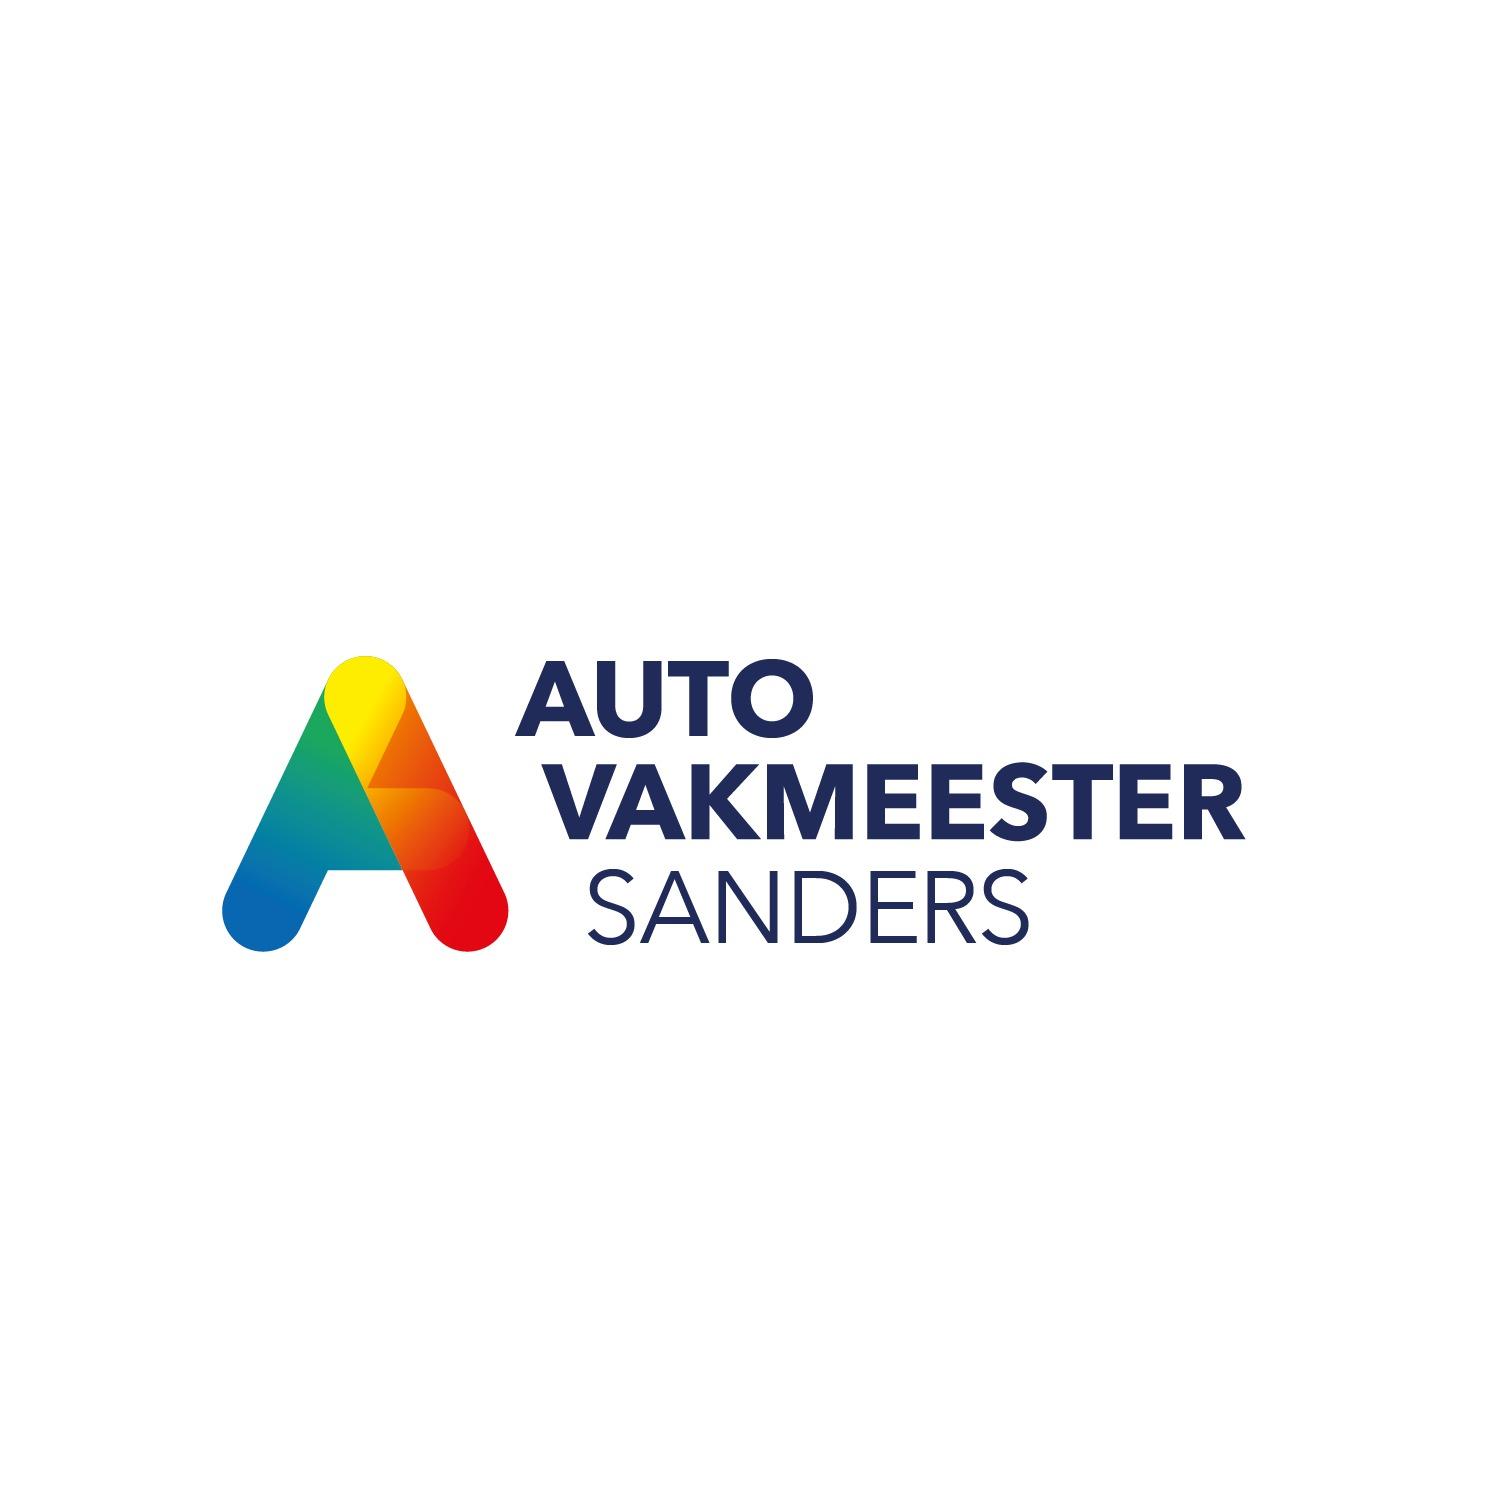 Autovakmeester Sanders Logo